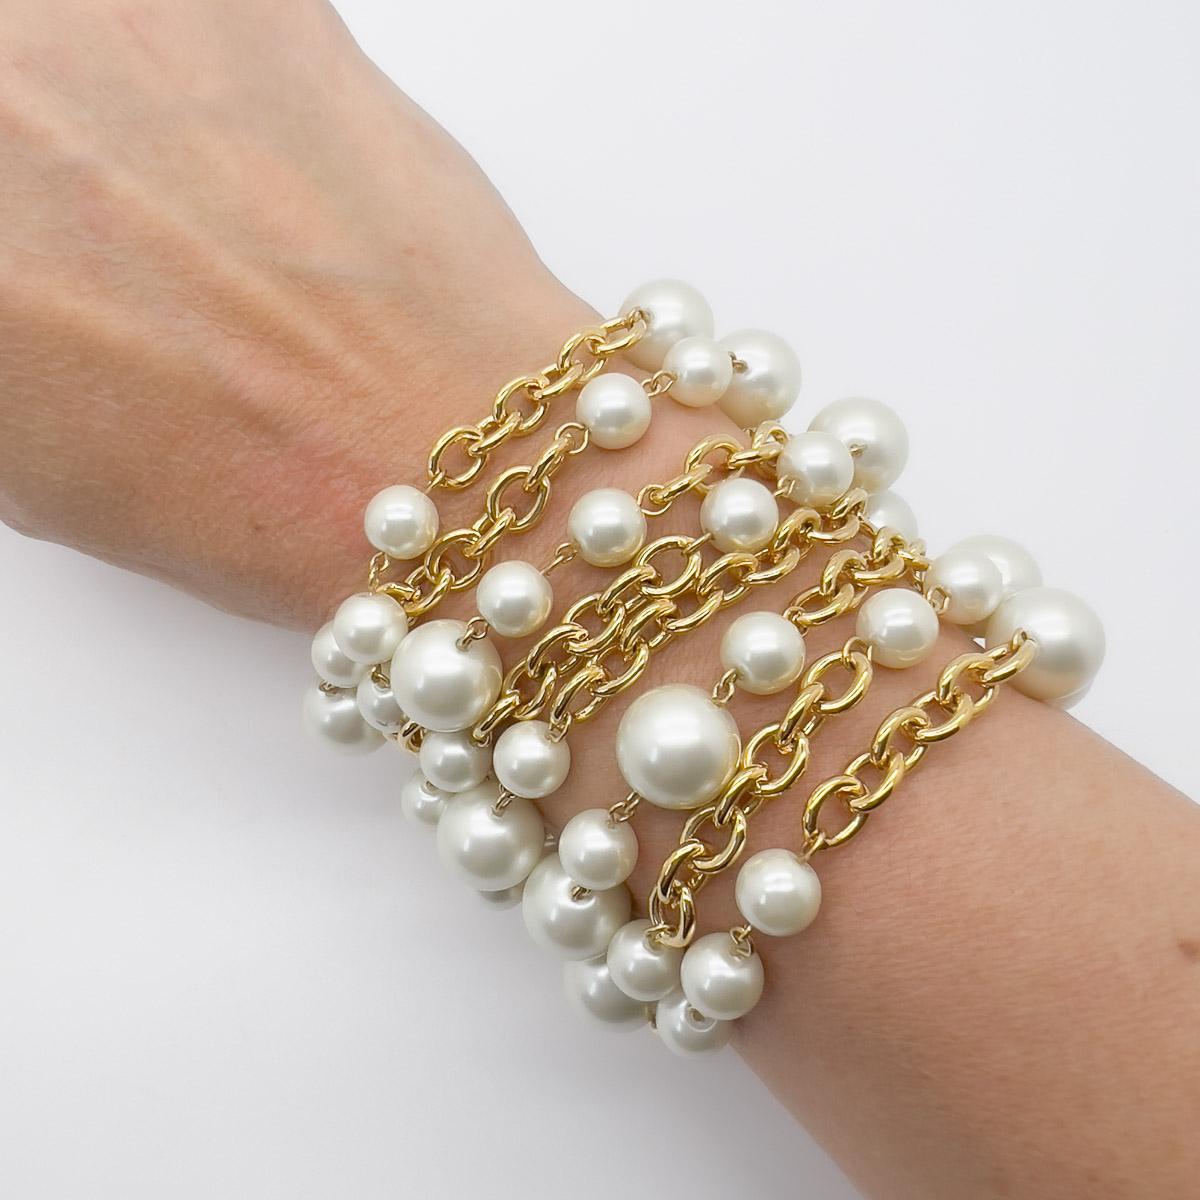 Eine atemberaubende Vintage Kenneth Jay Lane's Perlenmanschette. Reihenweise elegante Perlen, die mit einem besonderen Verschluss versehen sind. Dieses Stück ist voller Dramatik und wirkt elegant und zeitlos.

Ein seltener Schatz. KJL Kenneth Jay